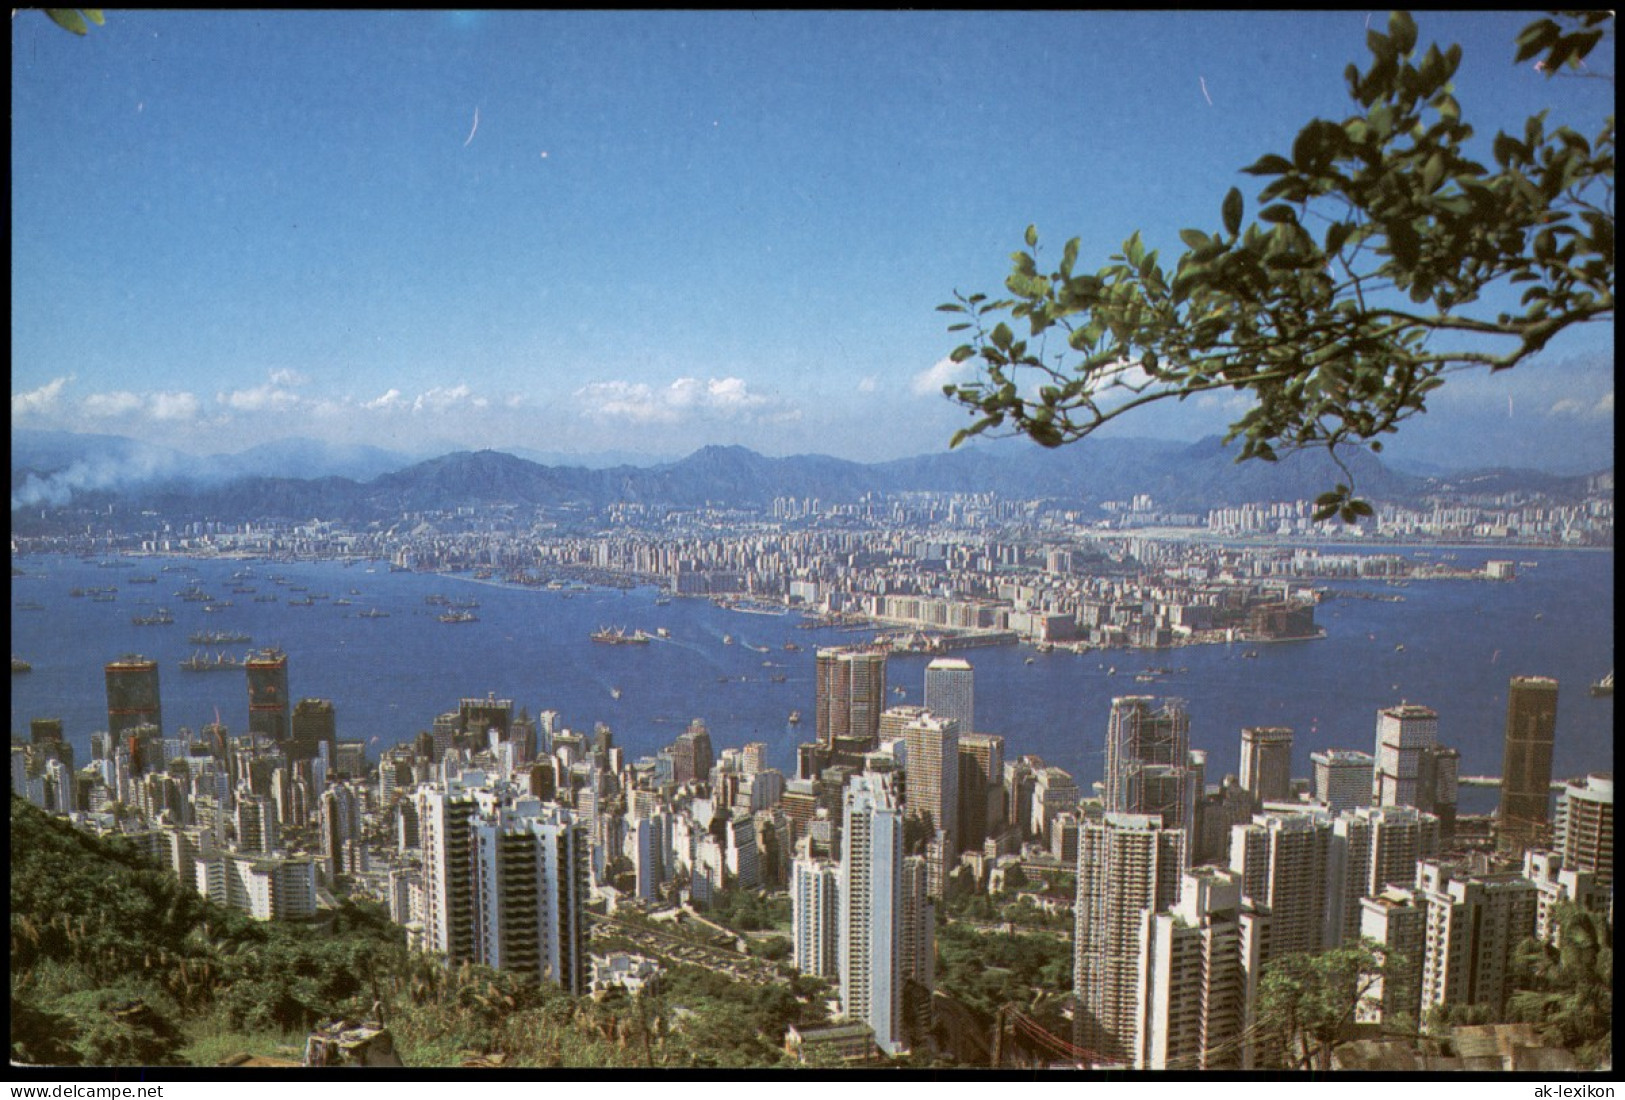 Postcard Hongkong Stadt Panorama City View 1980 - China (Hongkong)